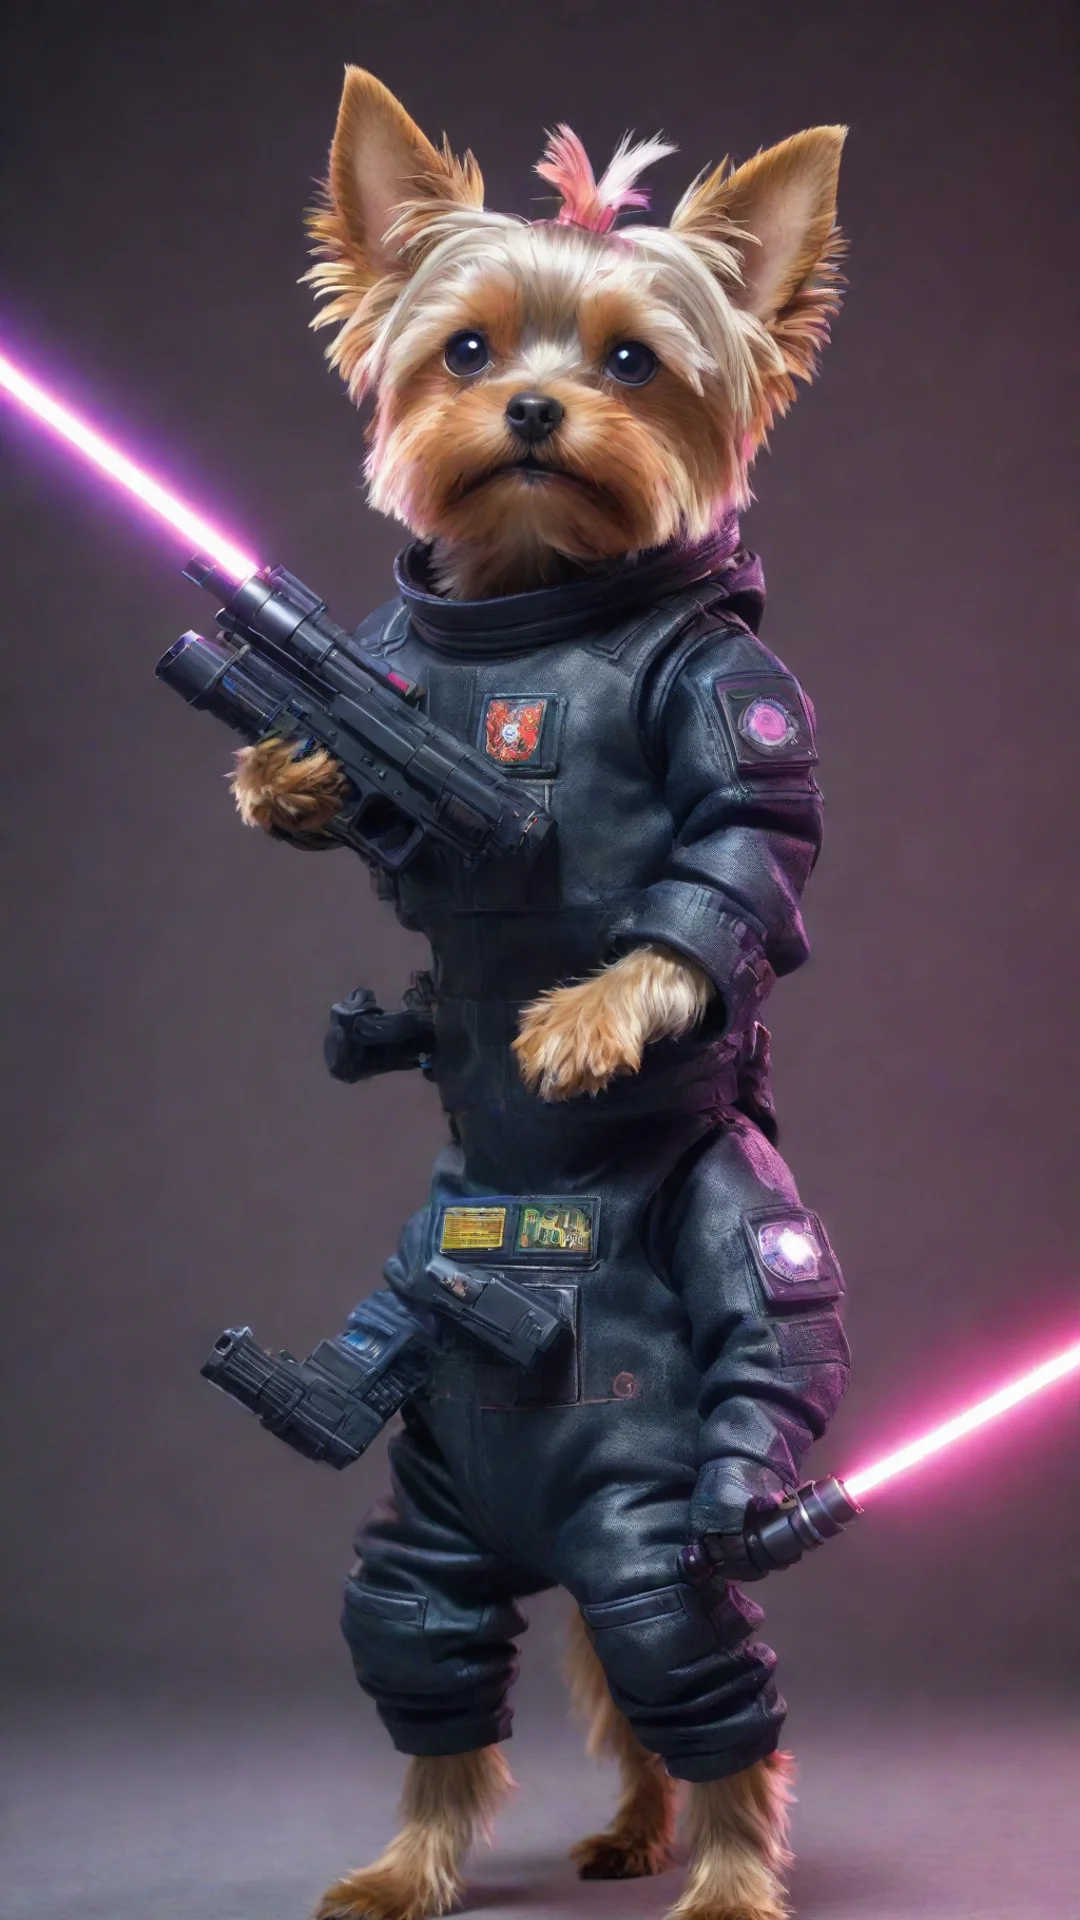 artstation art yorkshire terrier in a cyberpunk space suit firing a laser gun confident engaging wow 3 tall